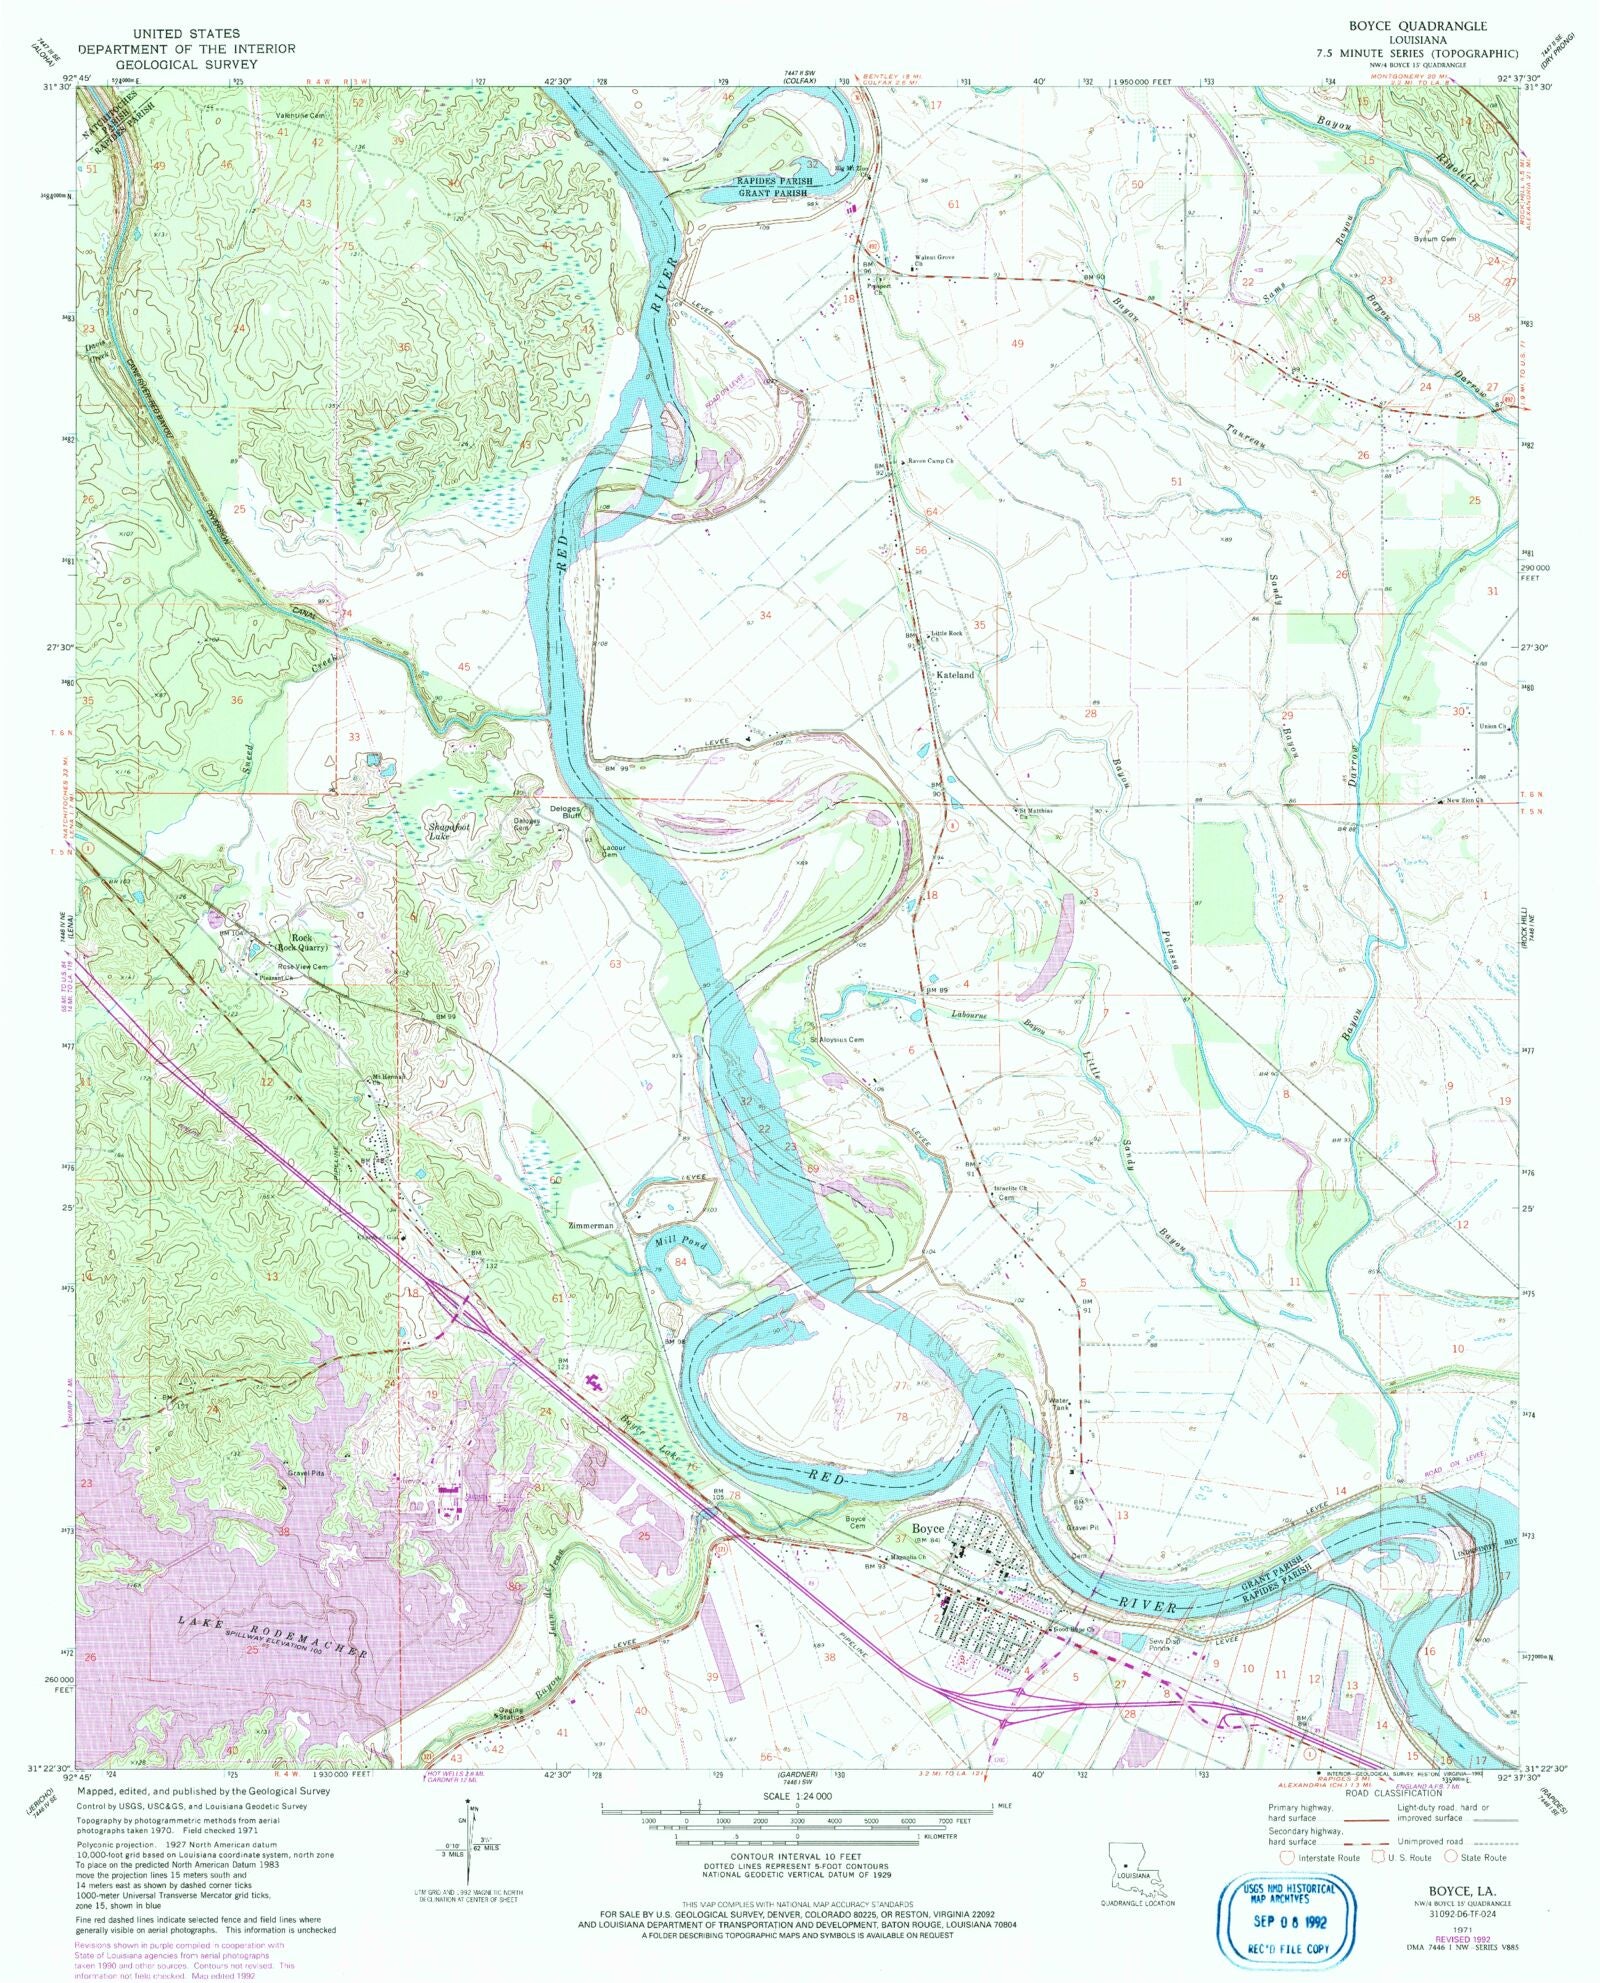 1930 Louisiana Map